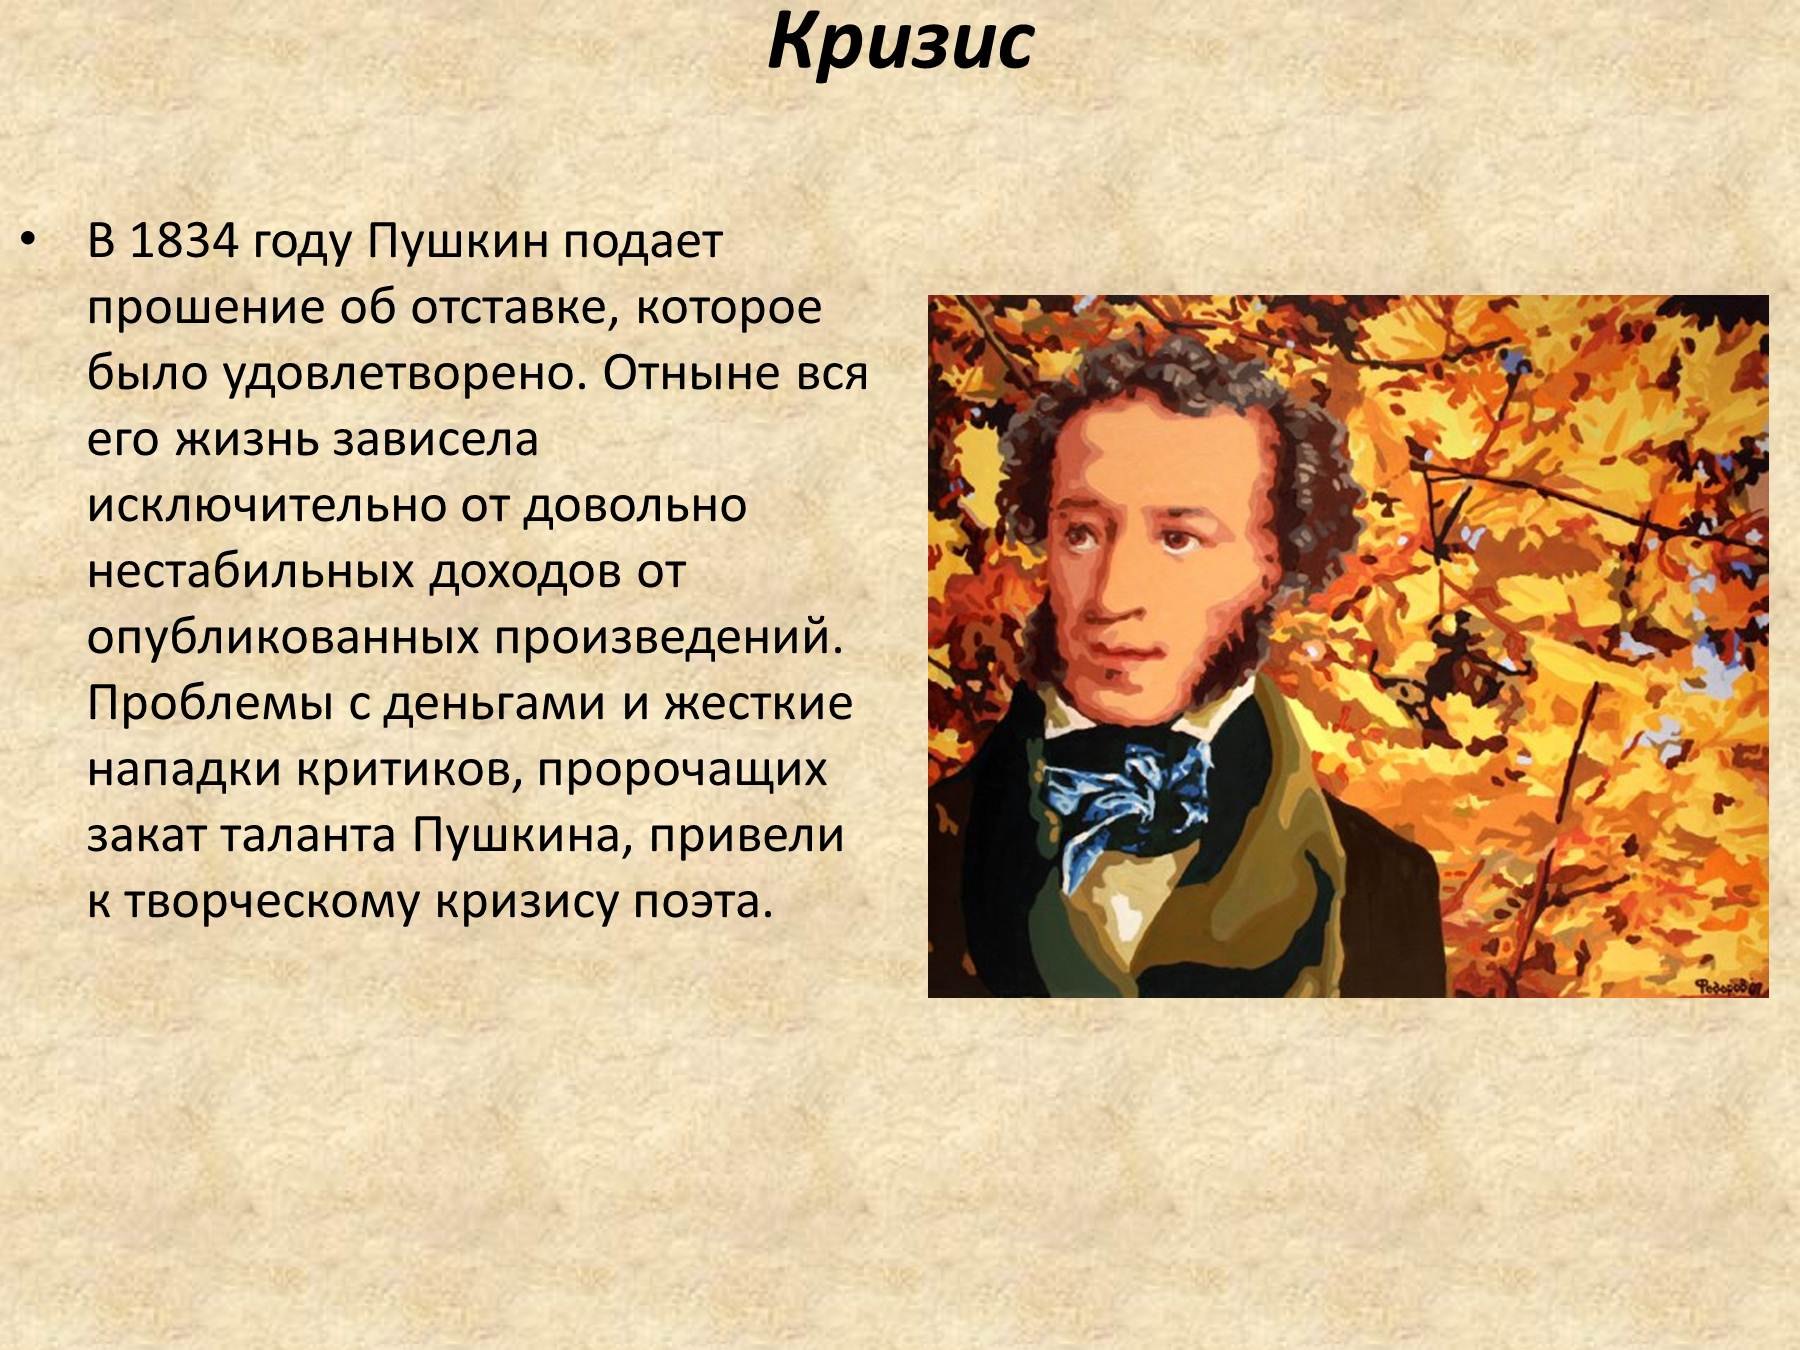 Дни жизни пушкина. Сообщение о Пушкине. Пушкин биография. Презентация о Пушкине.